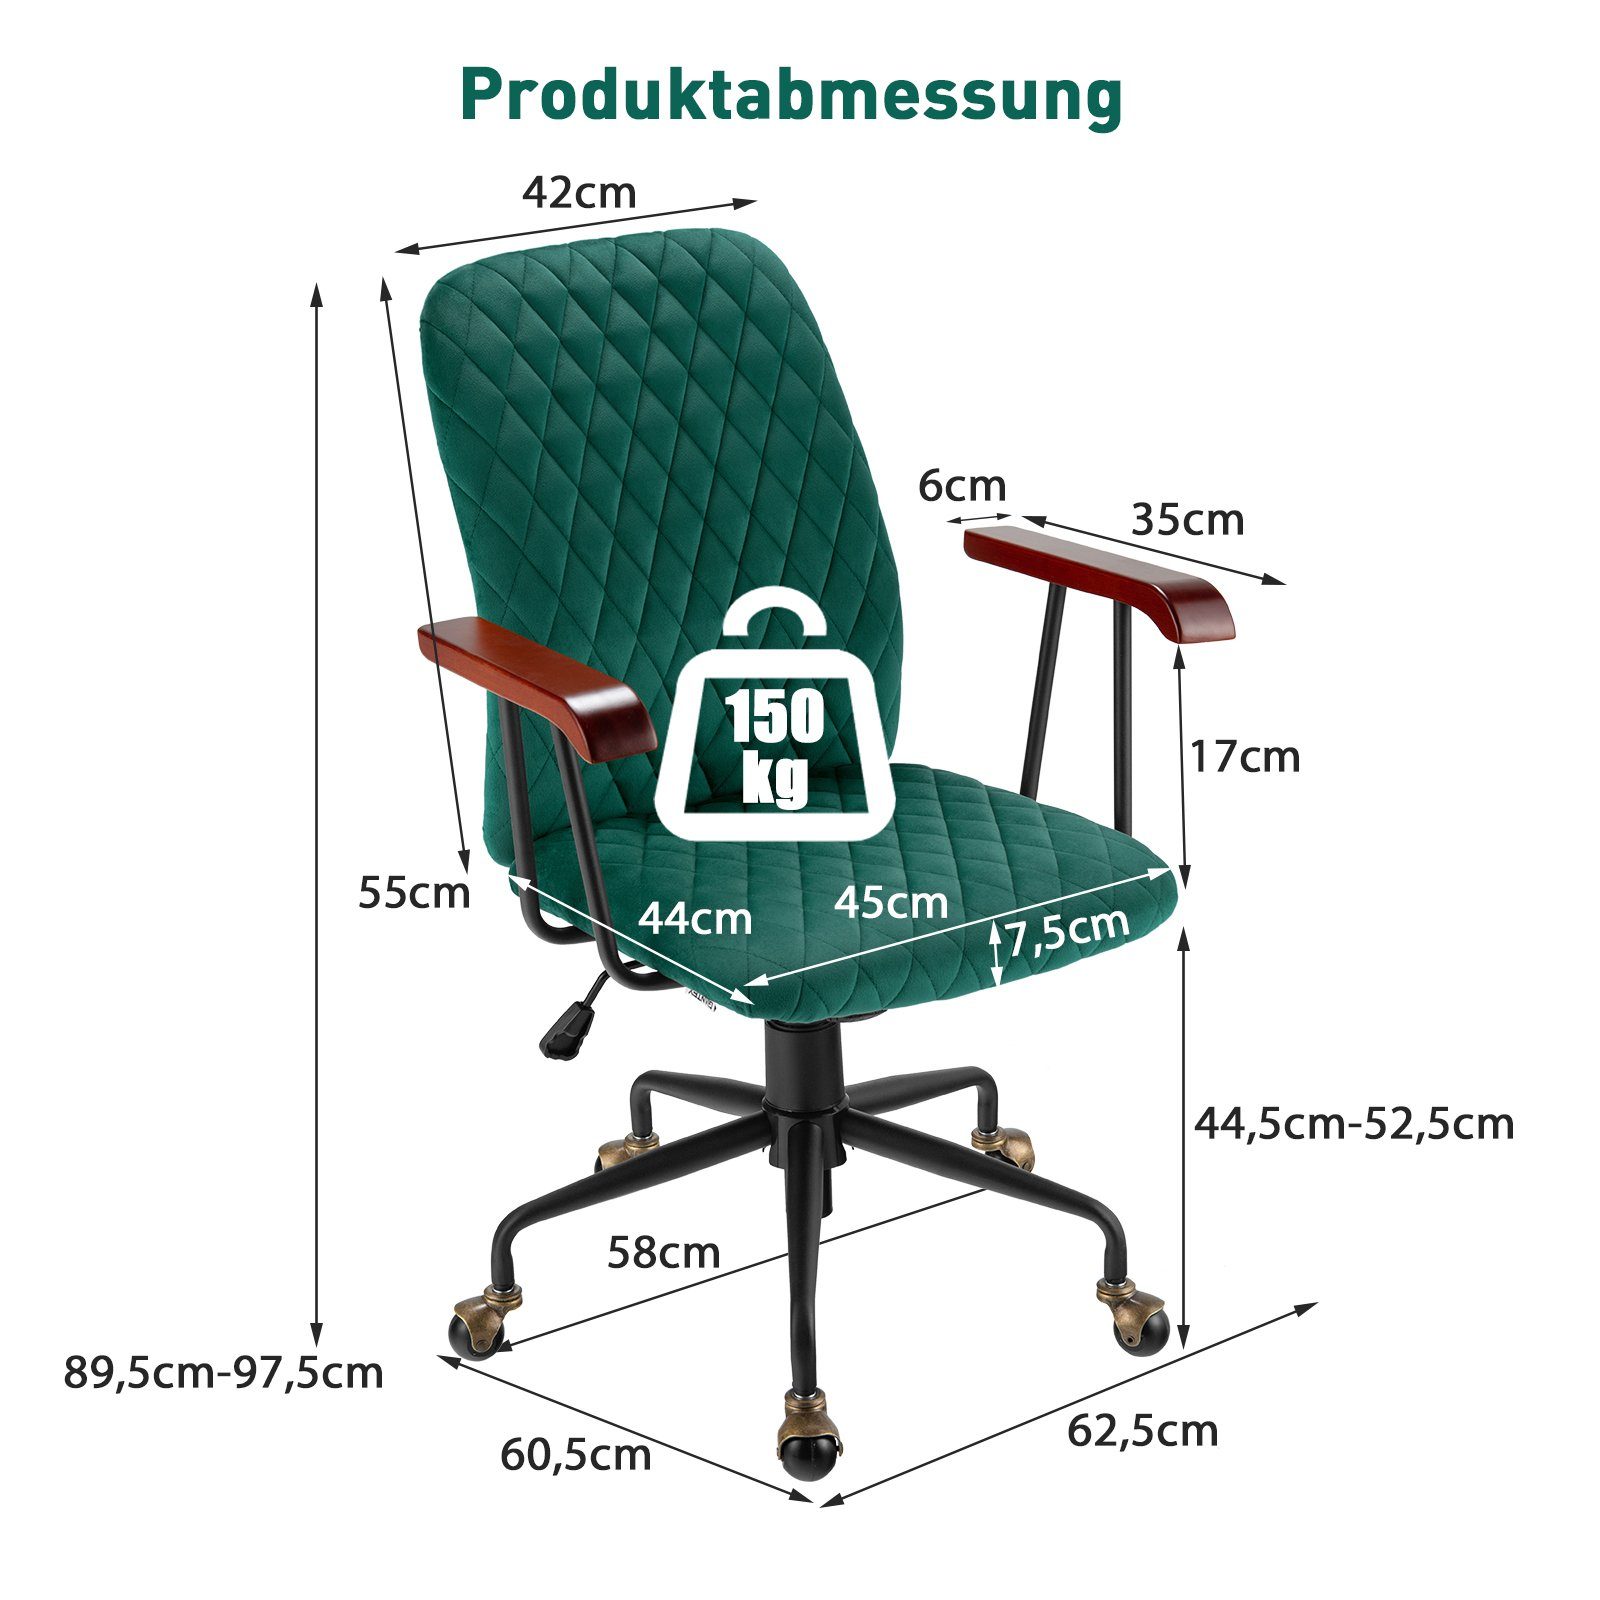 97,5cm Drehstuhl, höheverstellbar bis 89,5 bis COSTWAY grün kg, Bürostuhl 150